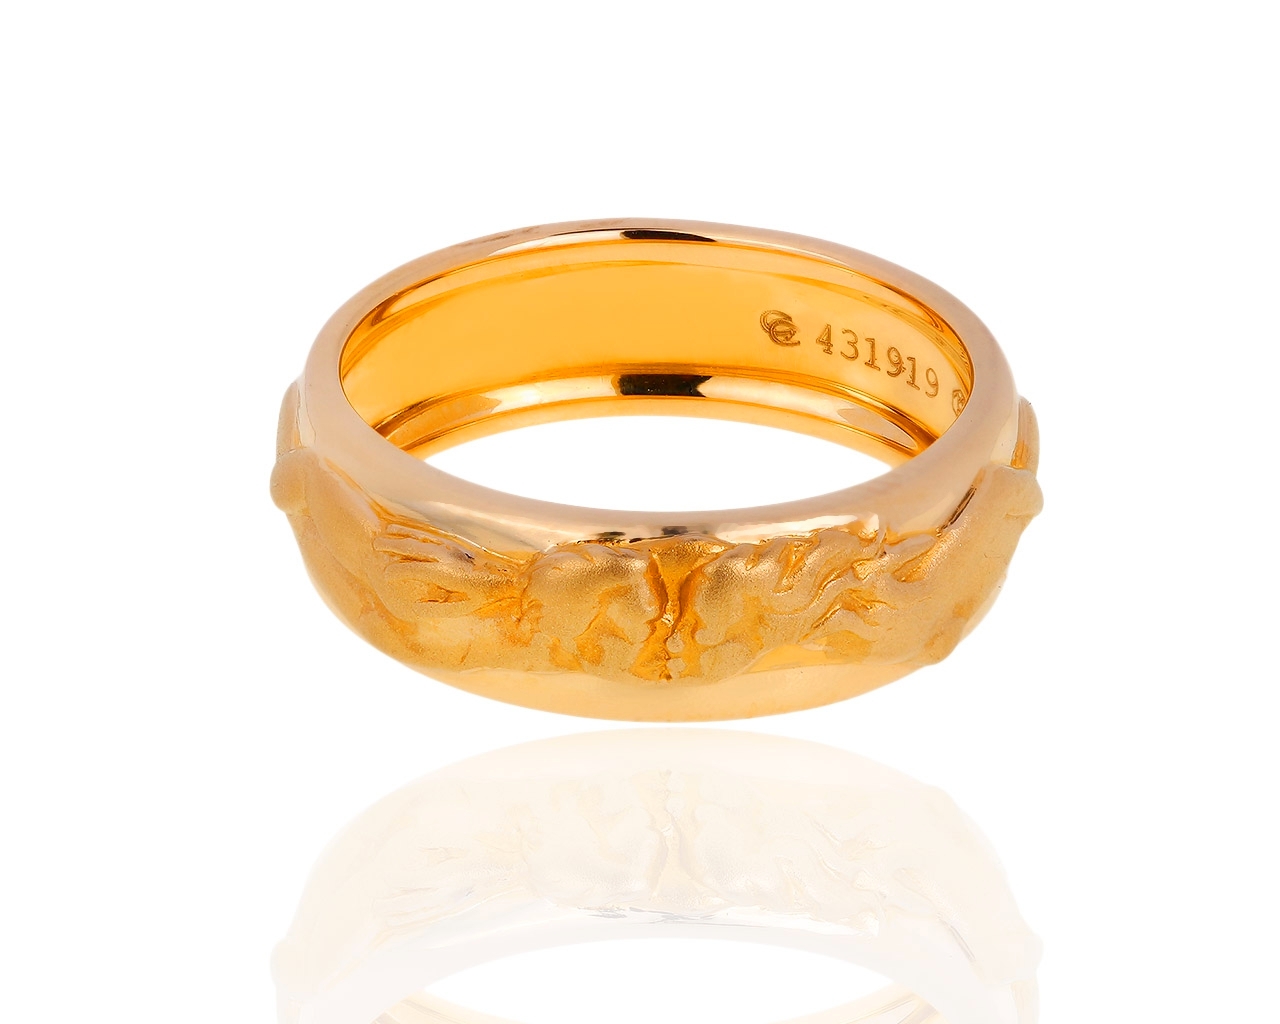 Прекрасное золотое кольцо Carrera y Carrera Promesa